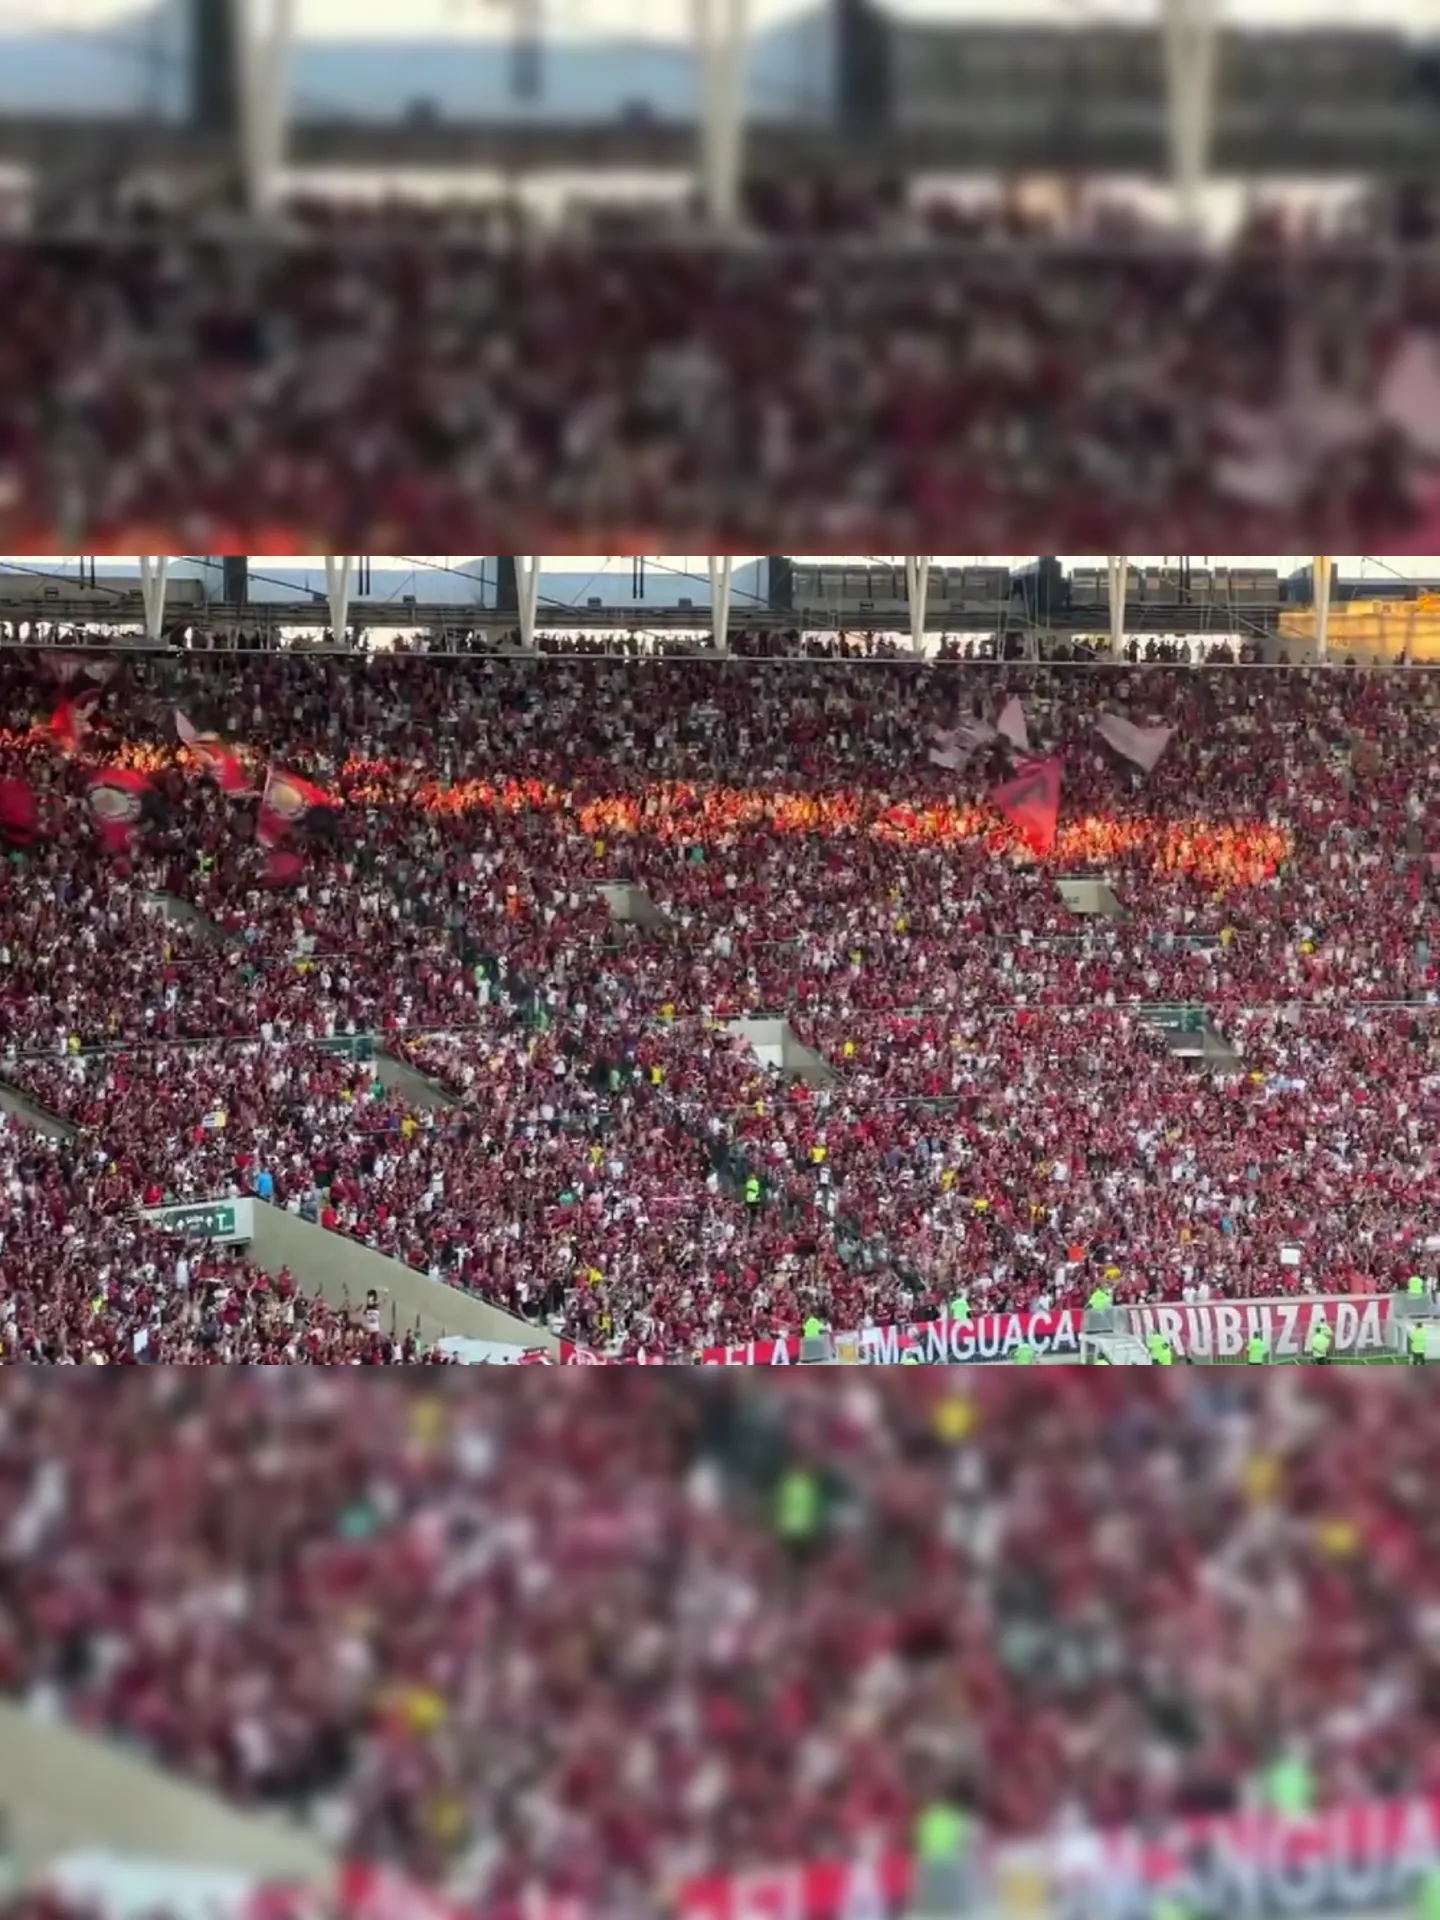 Torcida do Flamengo presente no Maracanã neste domingo